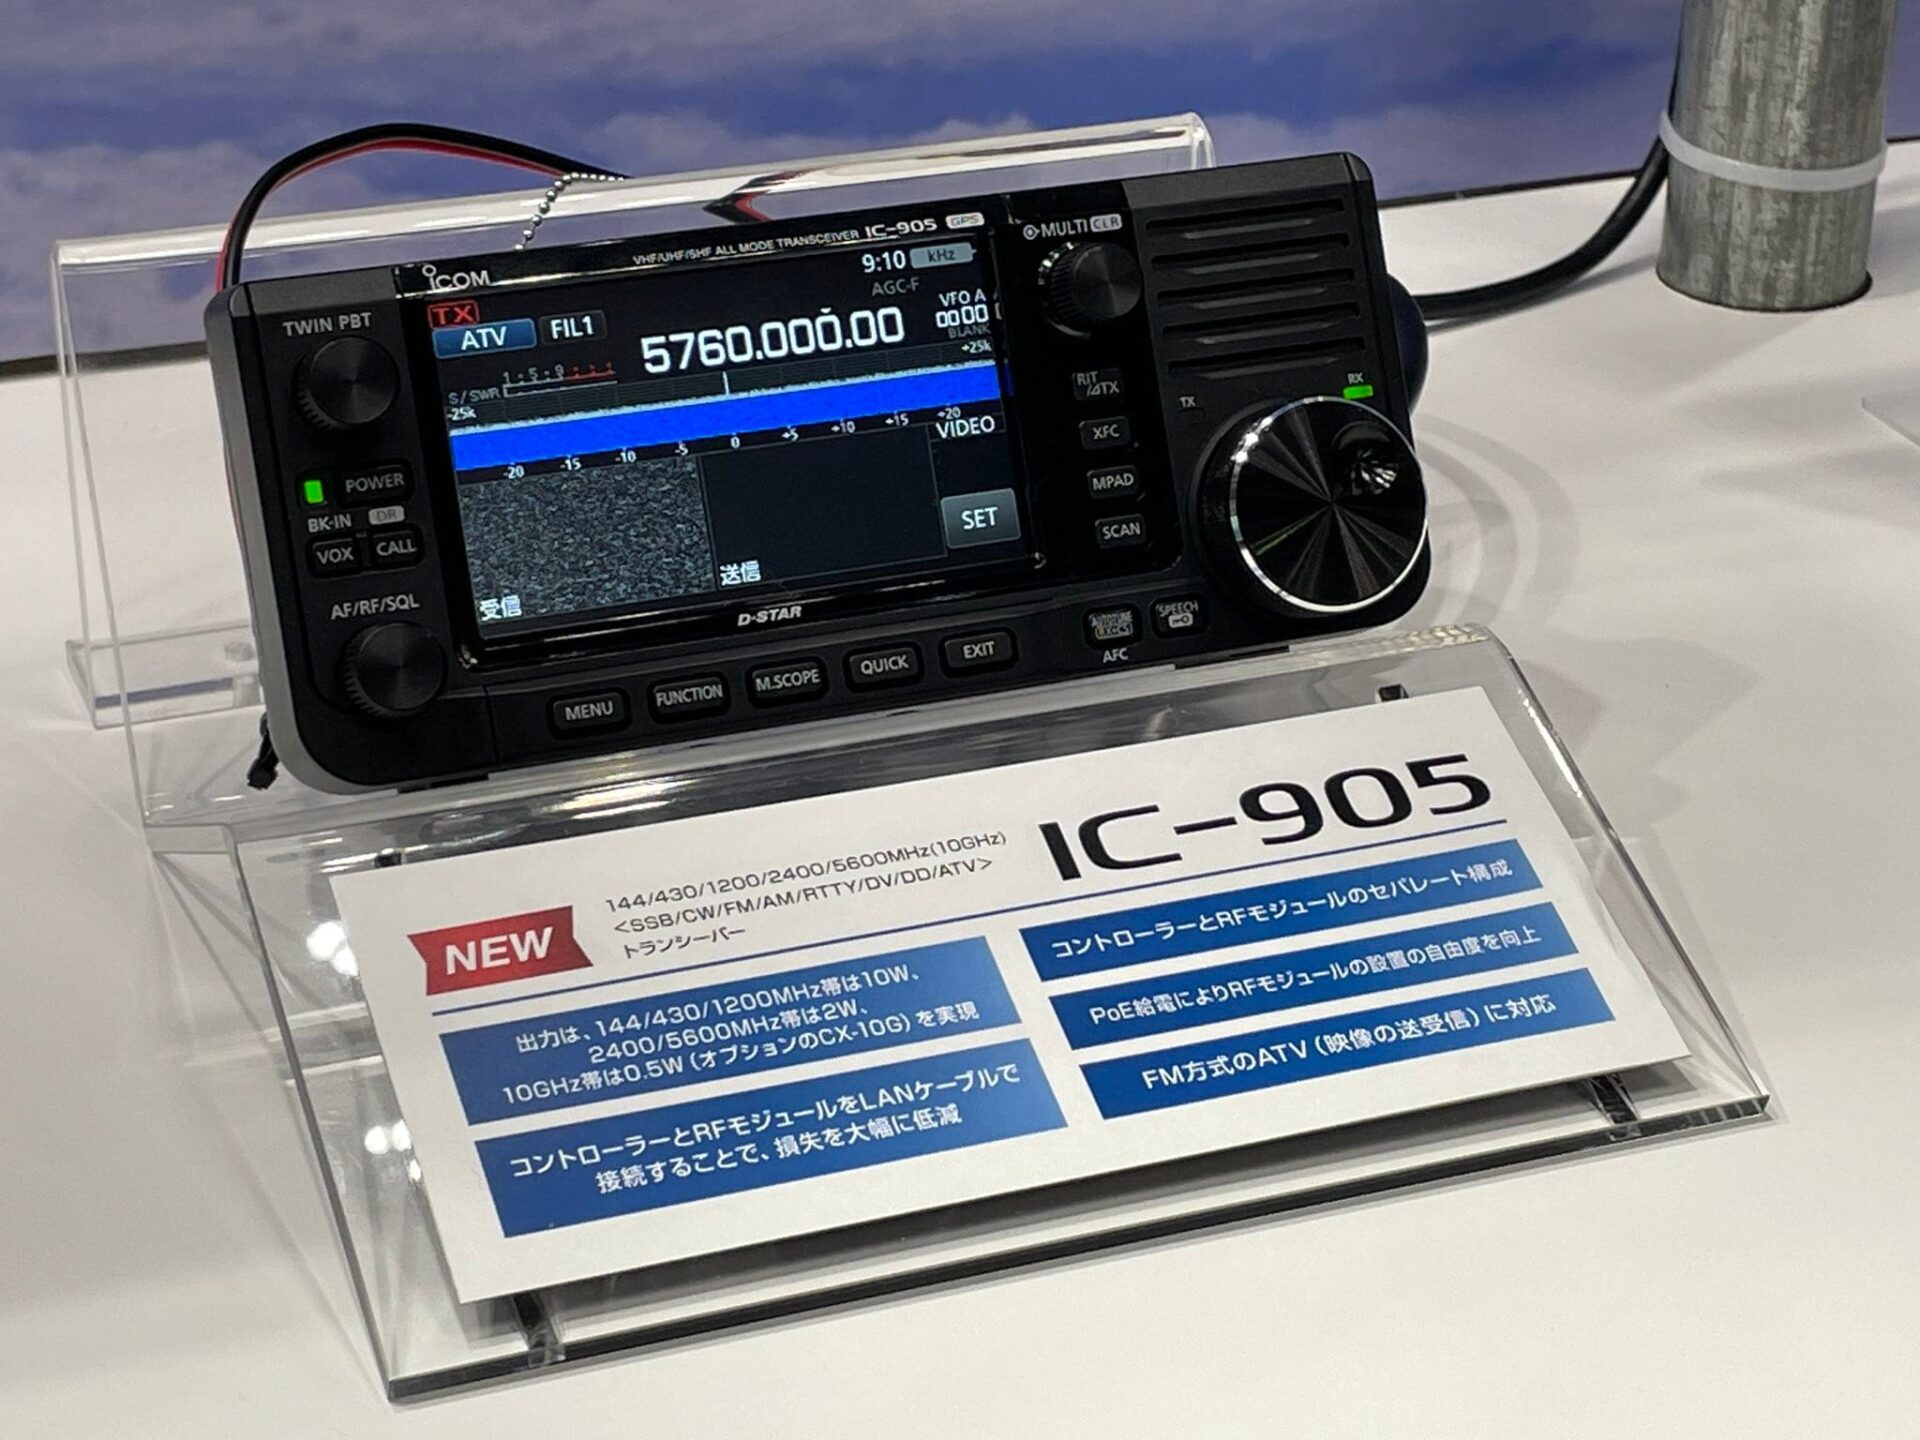 Icom IC-905 at Japanese Ham Fair 2022